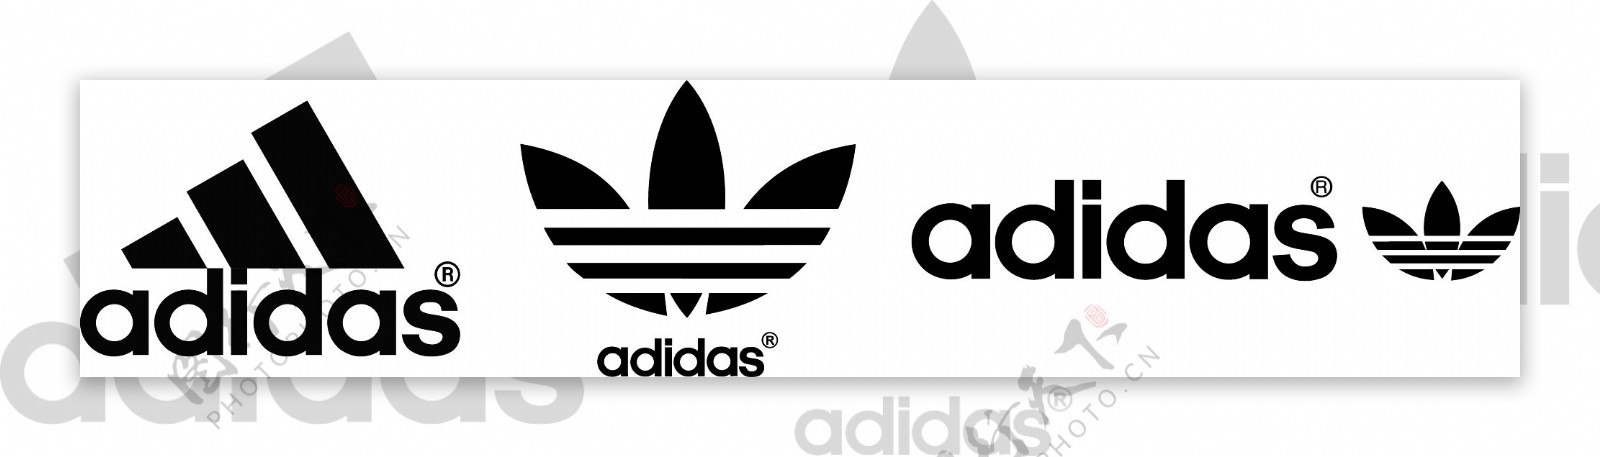 阿迪达斯adidas标志